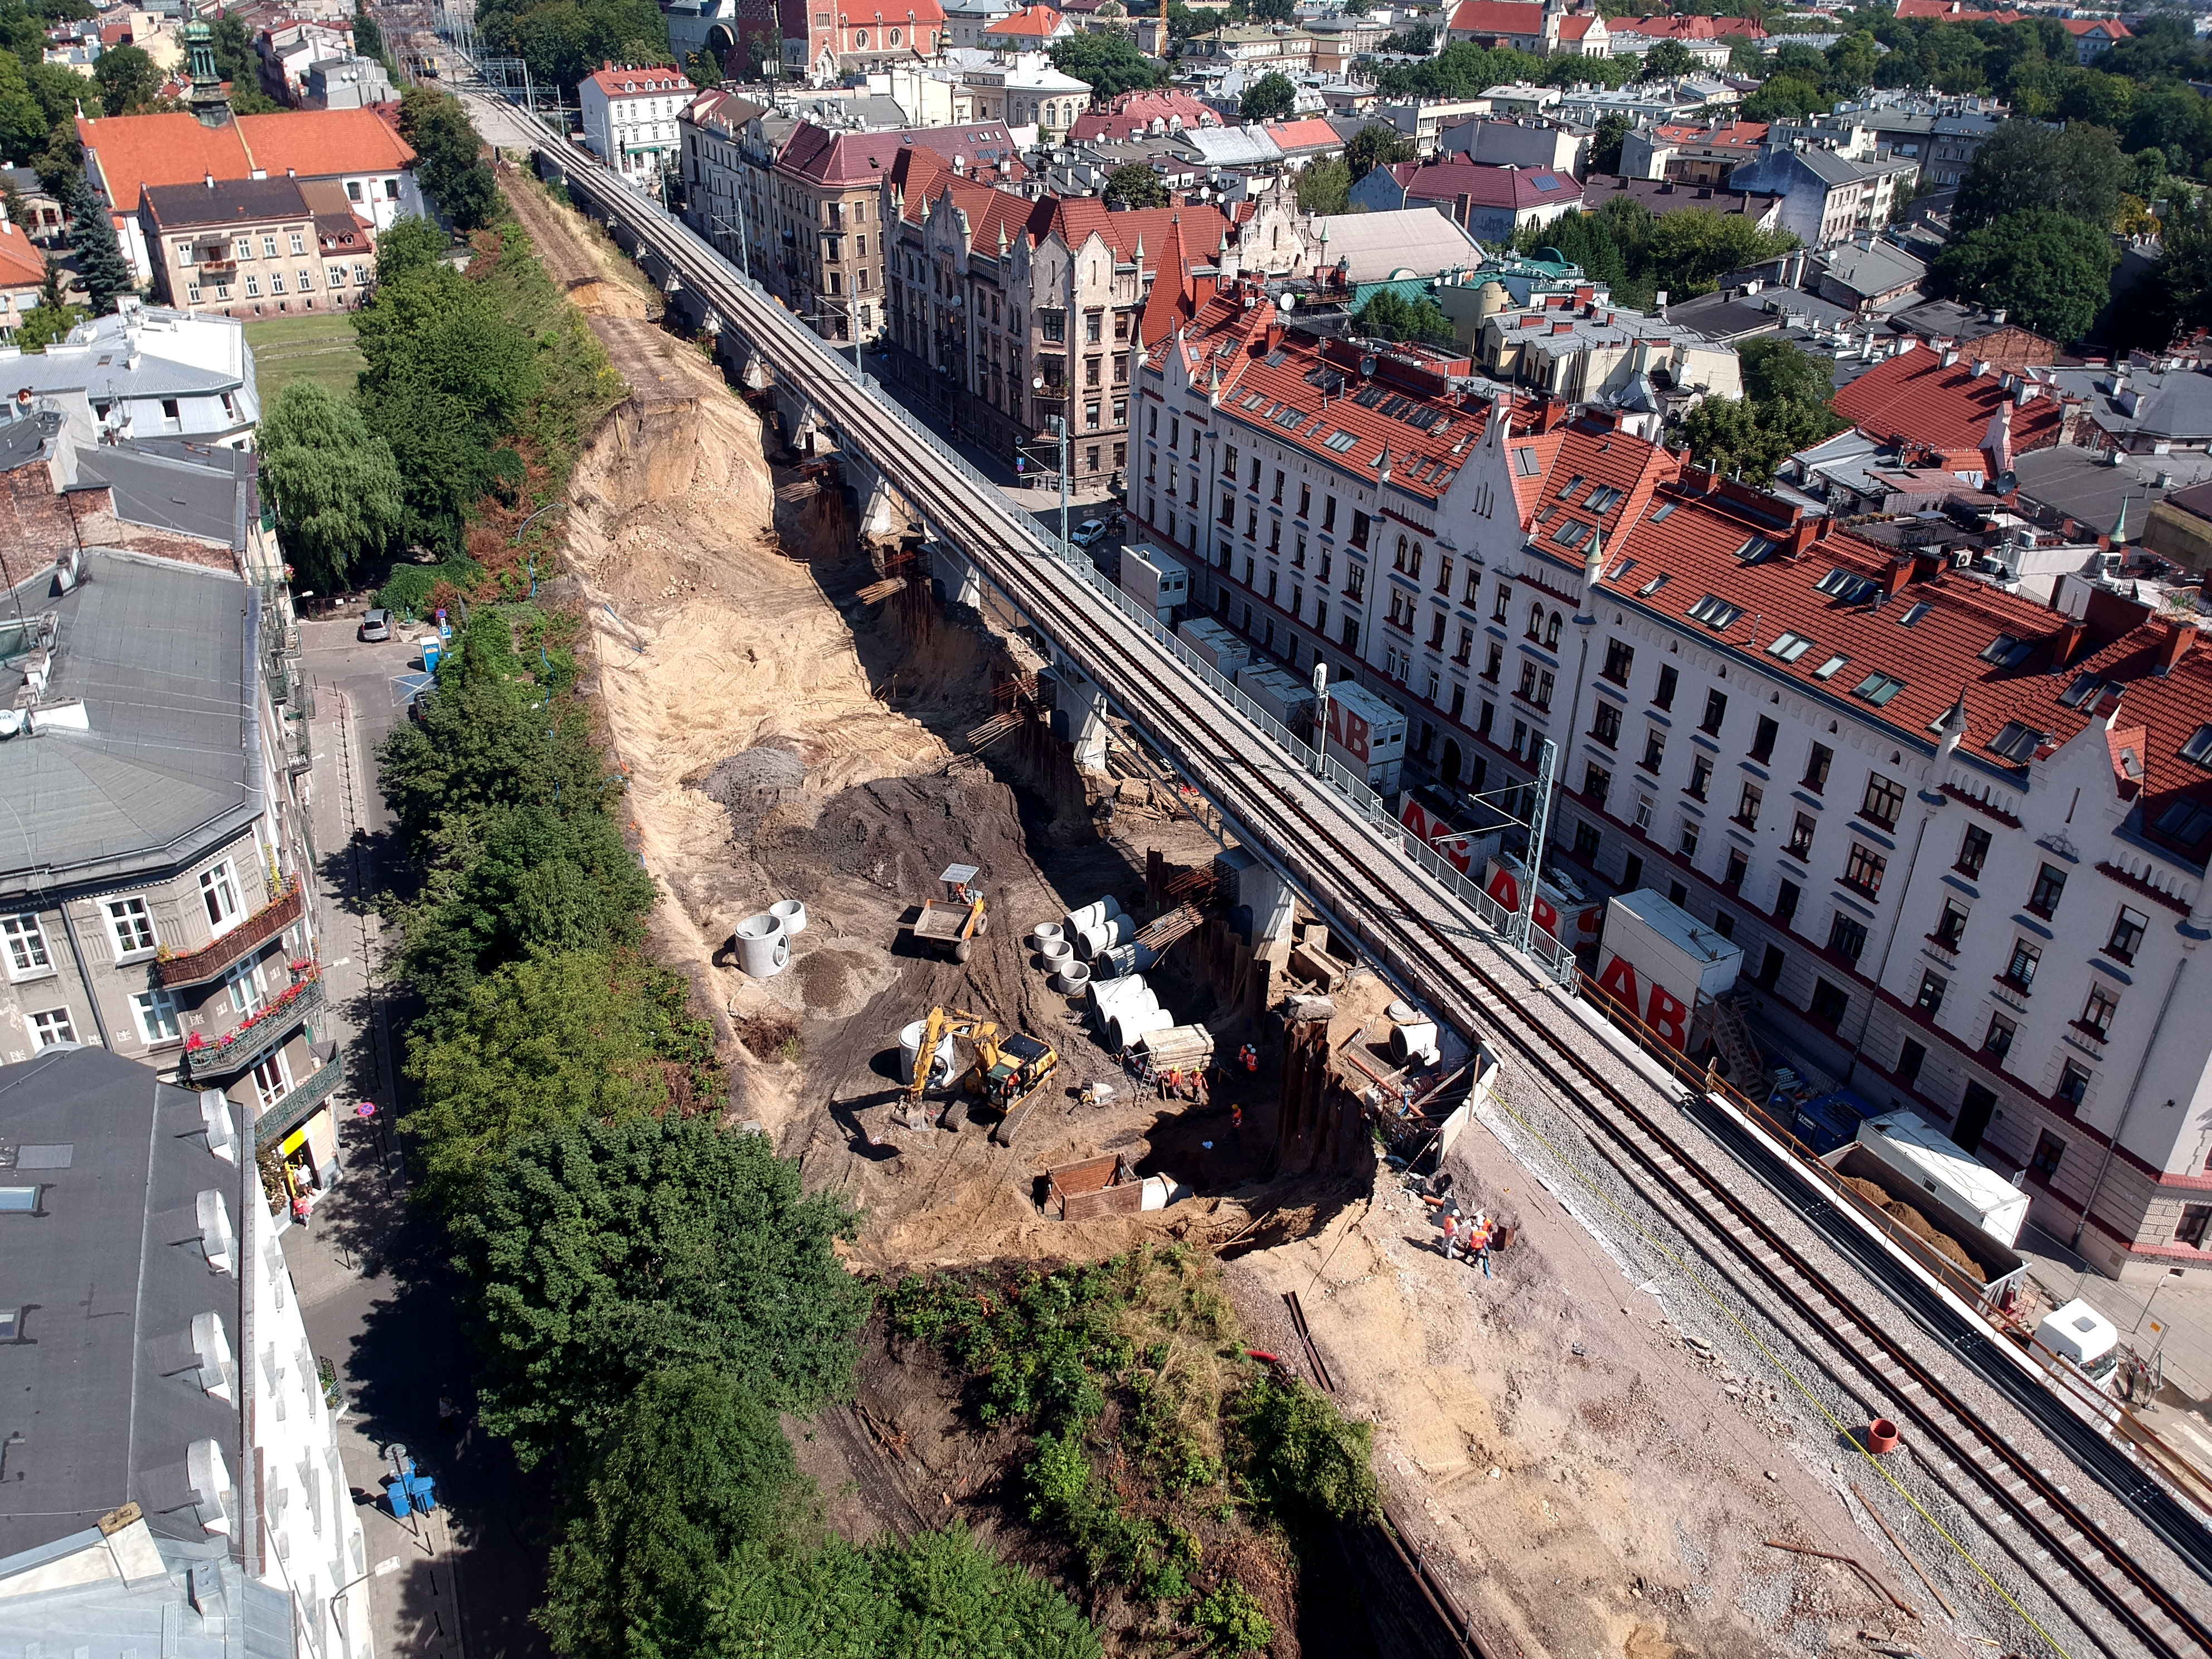 Zdjęcie z powietrza pokazujące prace przy rozbiórce starego nasypu kolejowego wzdłuż ul. Blich w Krakowie.